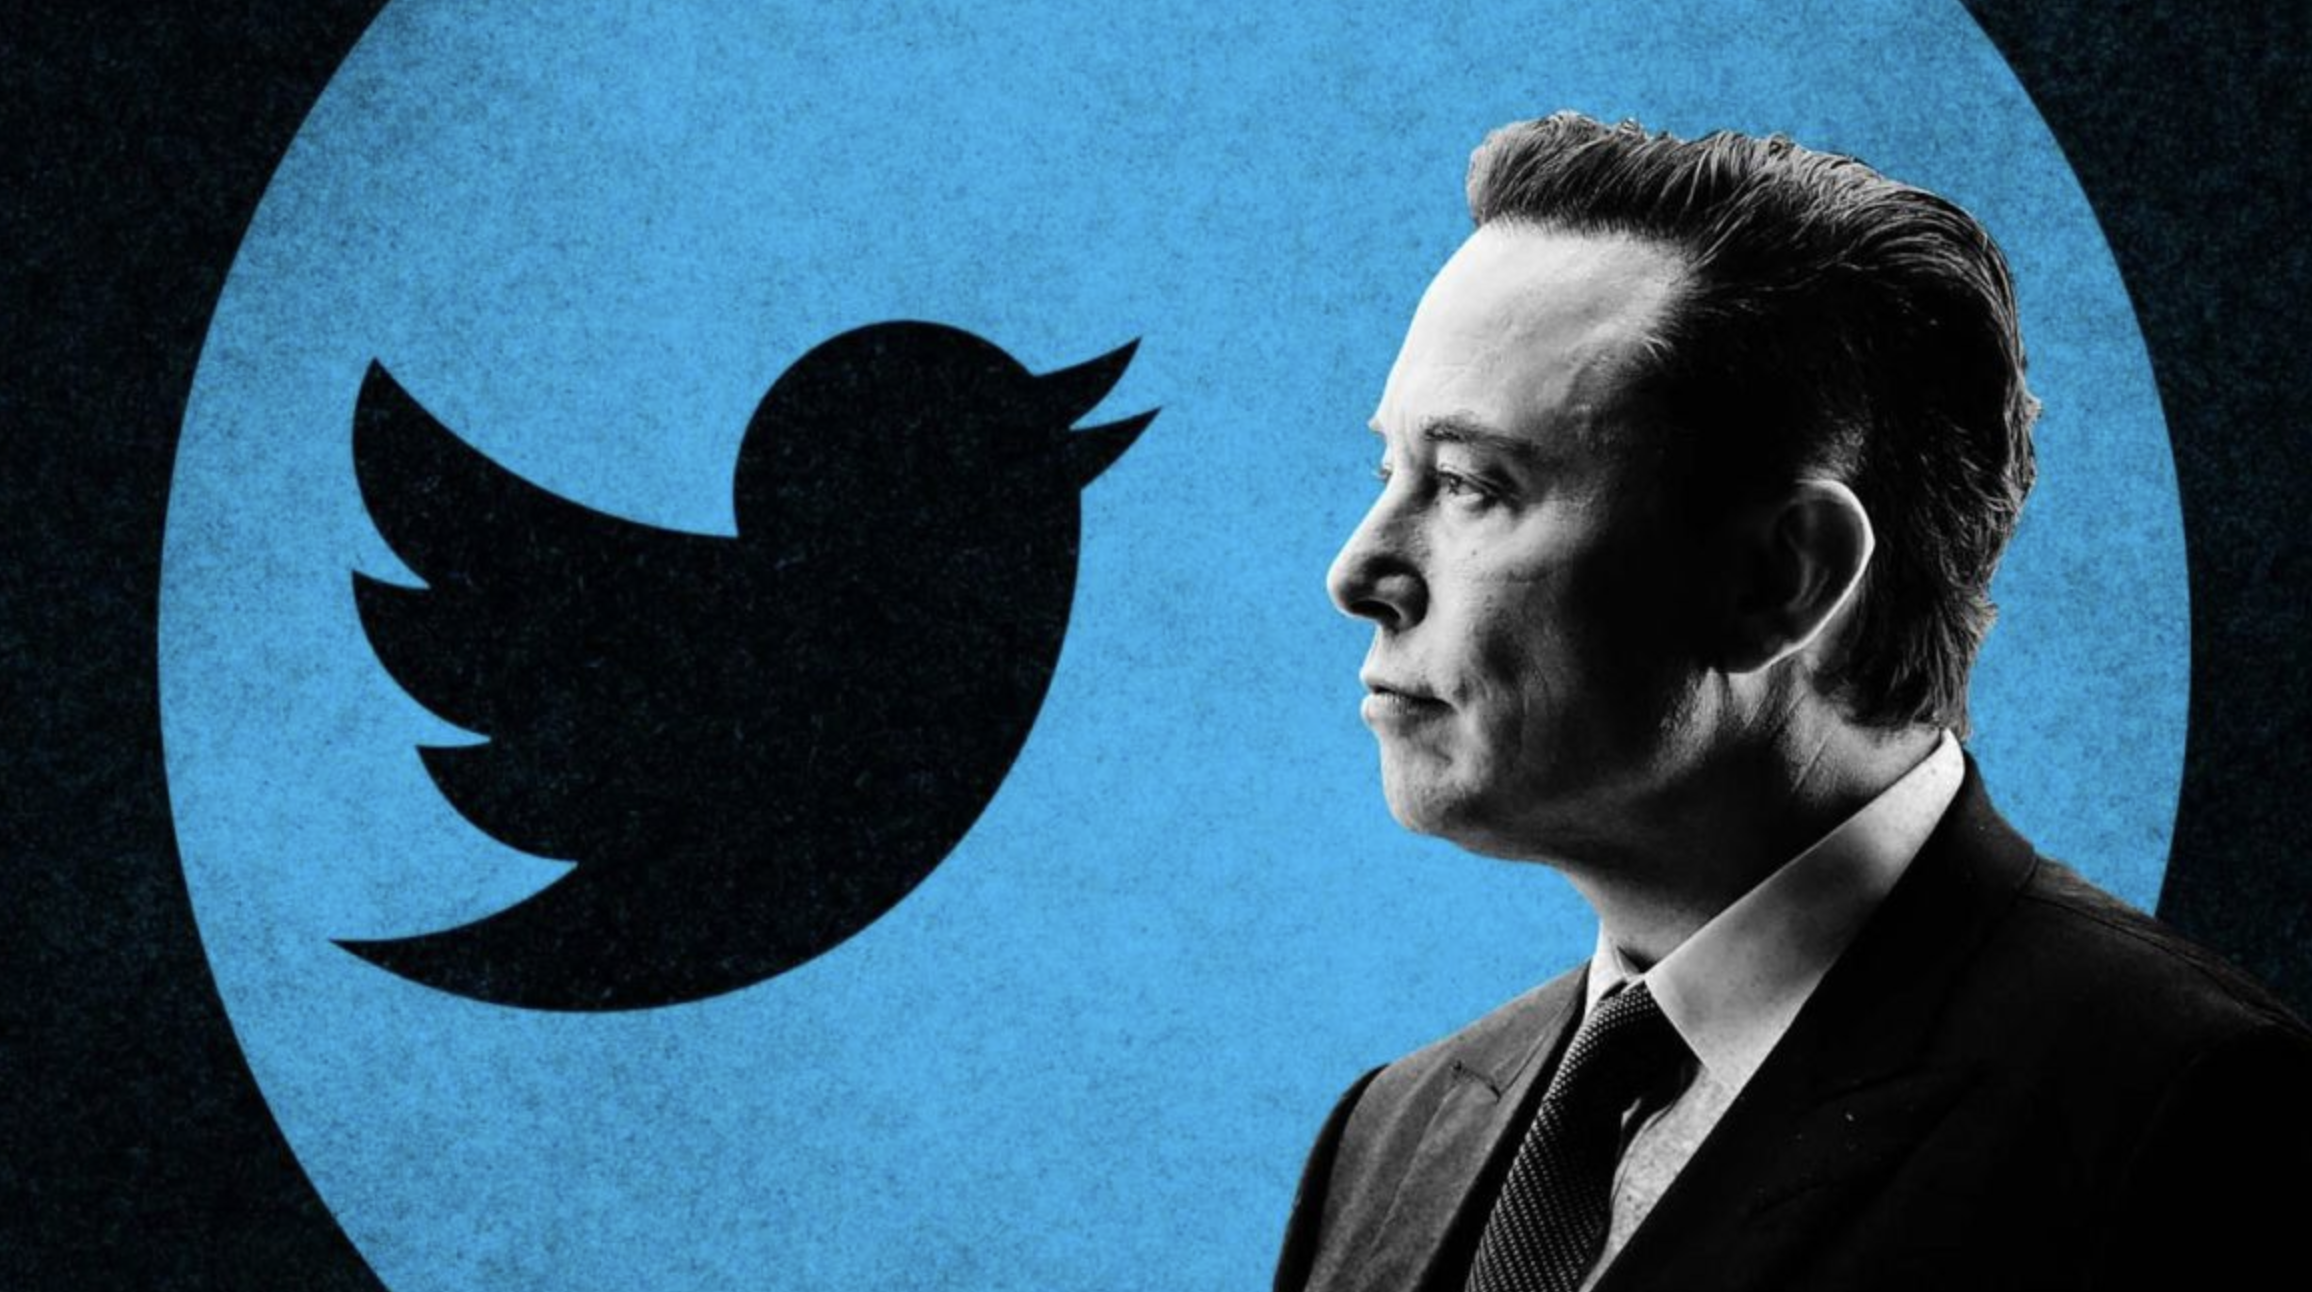 Elon Musk Terminating Twitter Deal